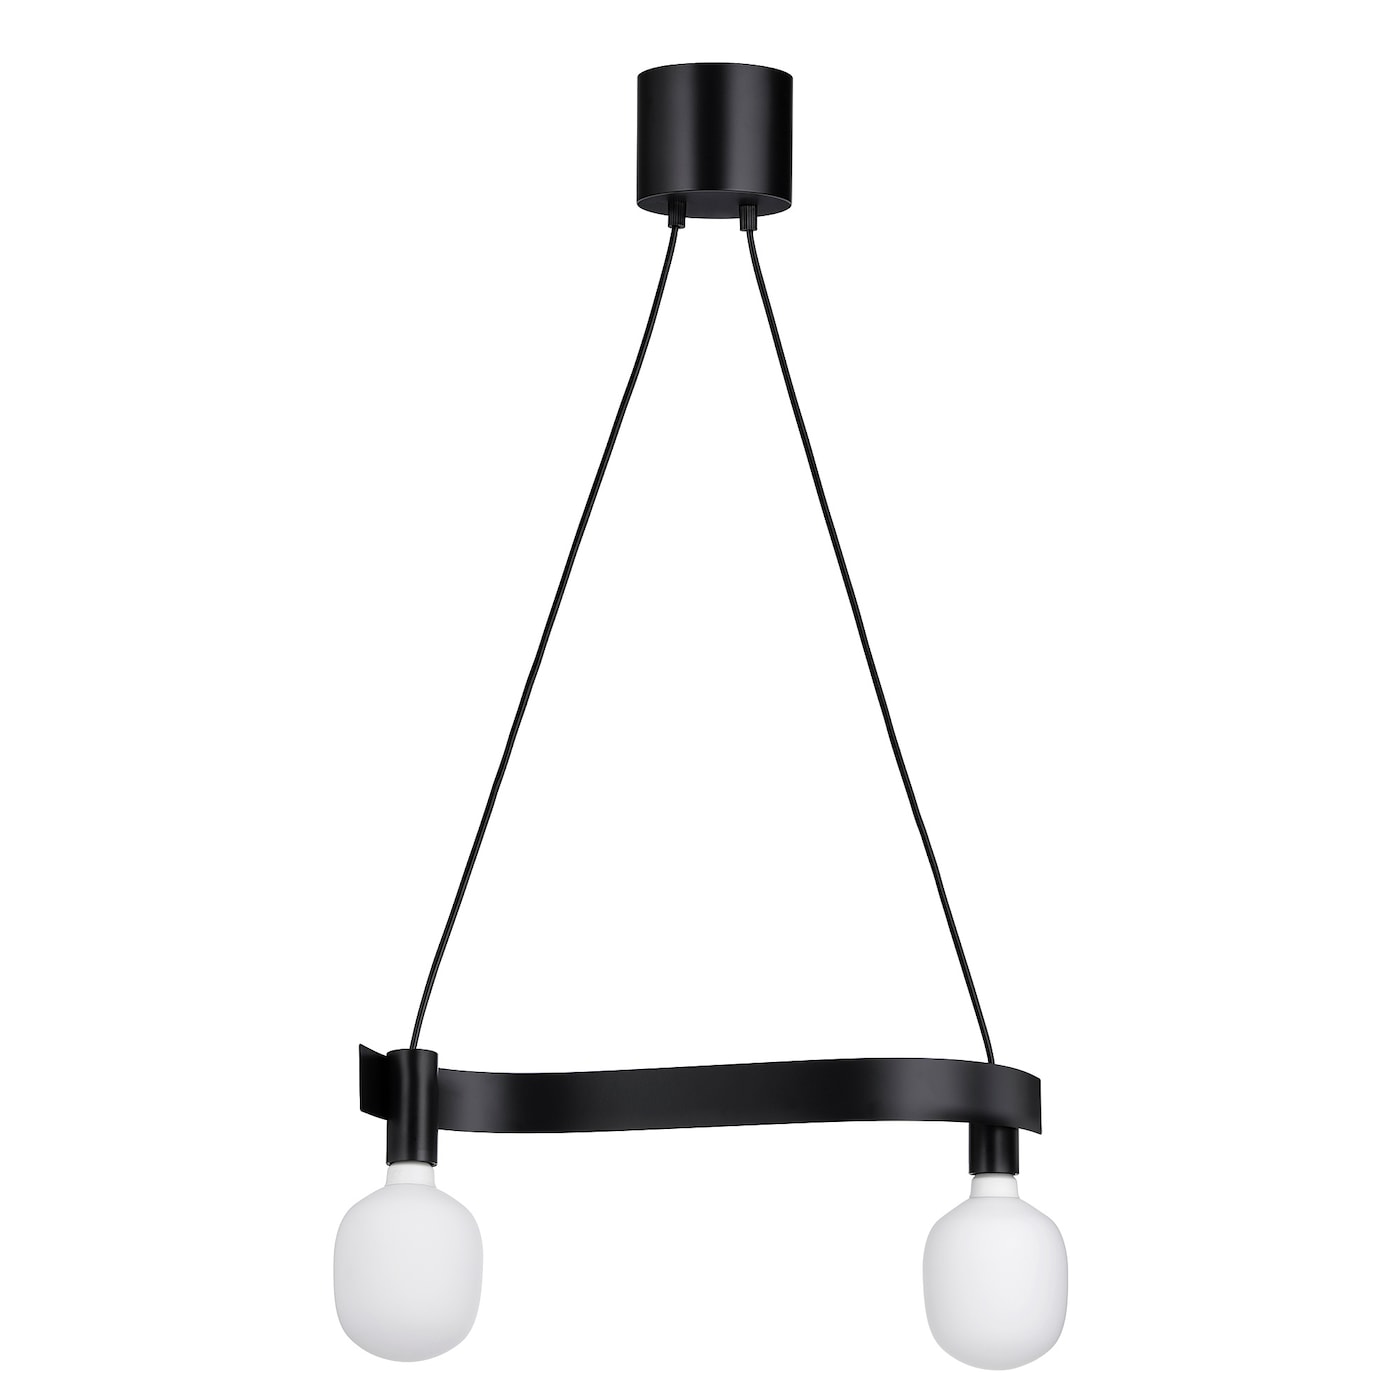 Подвесной светильник с лампочкой - ACKJA / TRÅDFRI /TRАDFRI  IKEA/АККЙЯ/ТРОДФРИ  ИКЕА, черный